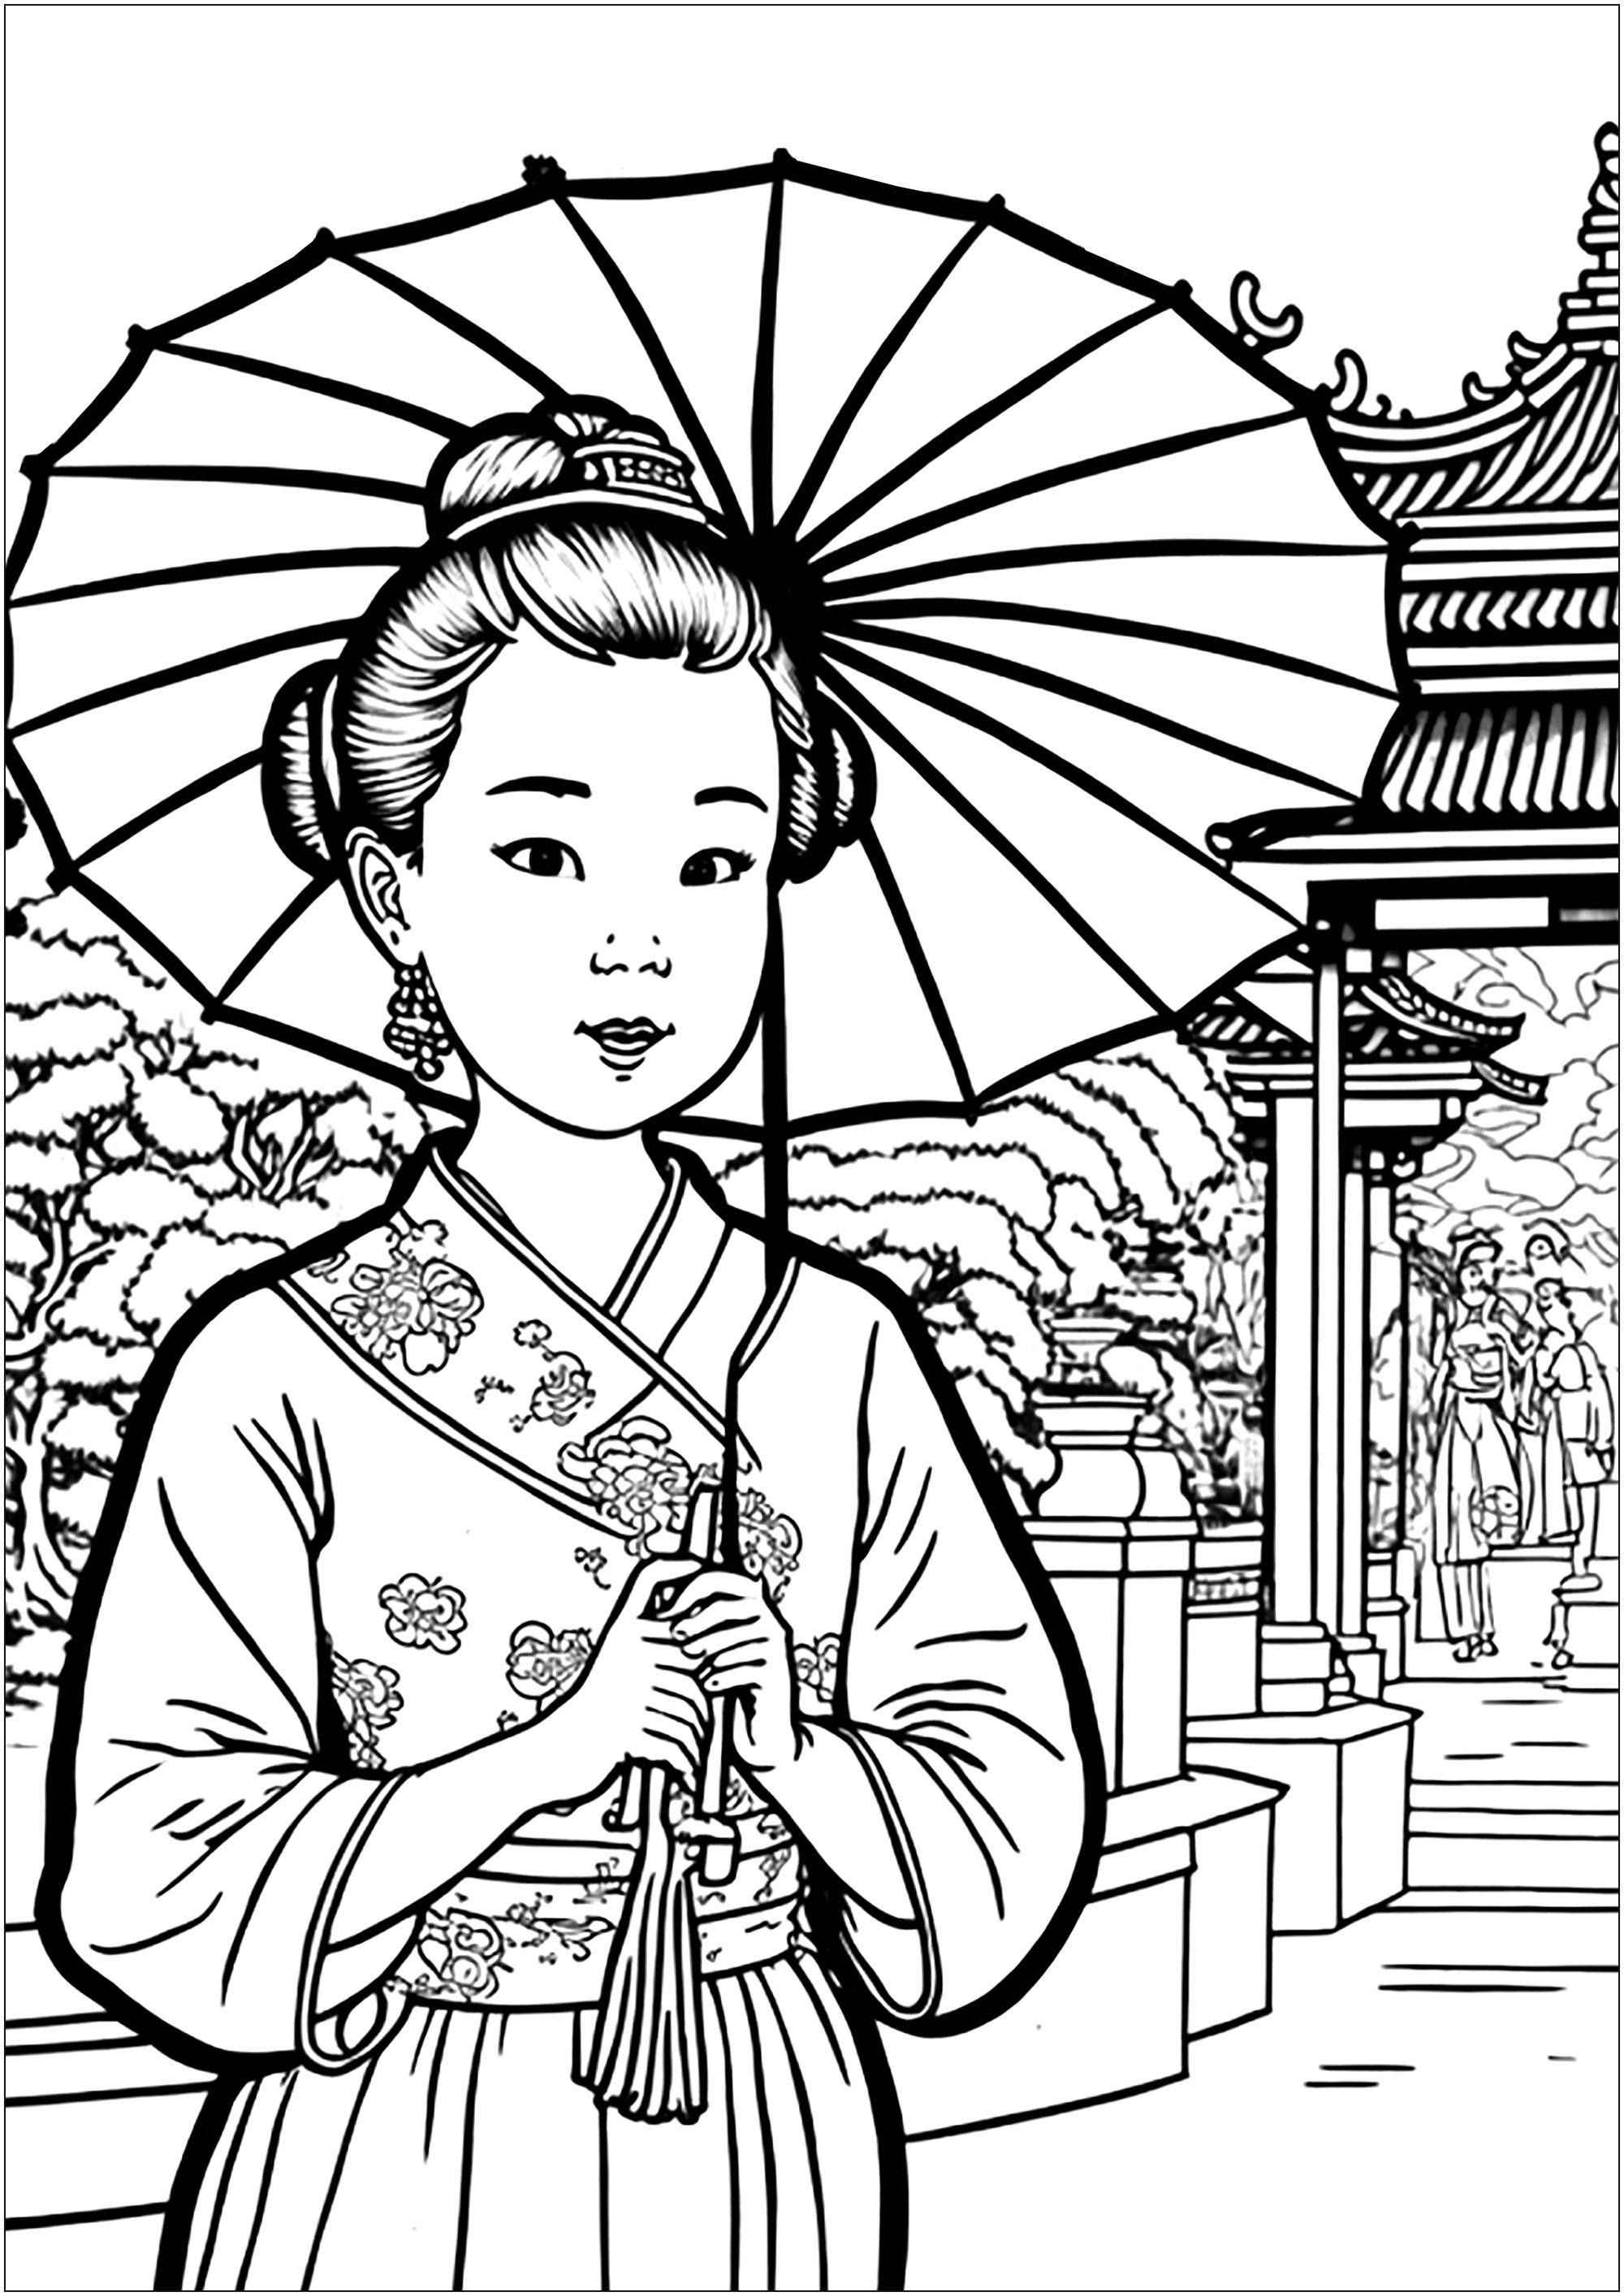 Una bonita mujer china con kimono y una hermosa sombrilla. La joven lleva un precioso kimono de vivos colores y un sombrero tradicional. Completa su atuendo con un bonito paraguas de papel. A su alrededor, un bonito templo y un típico jardín se tiñen de colores.